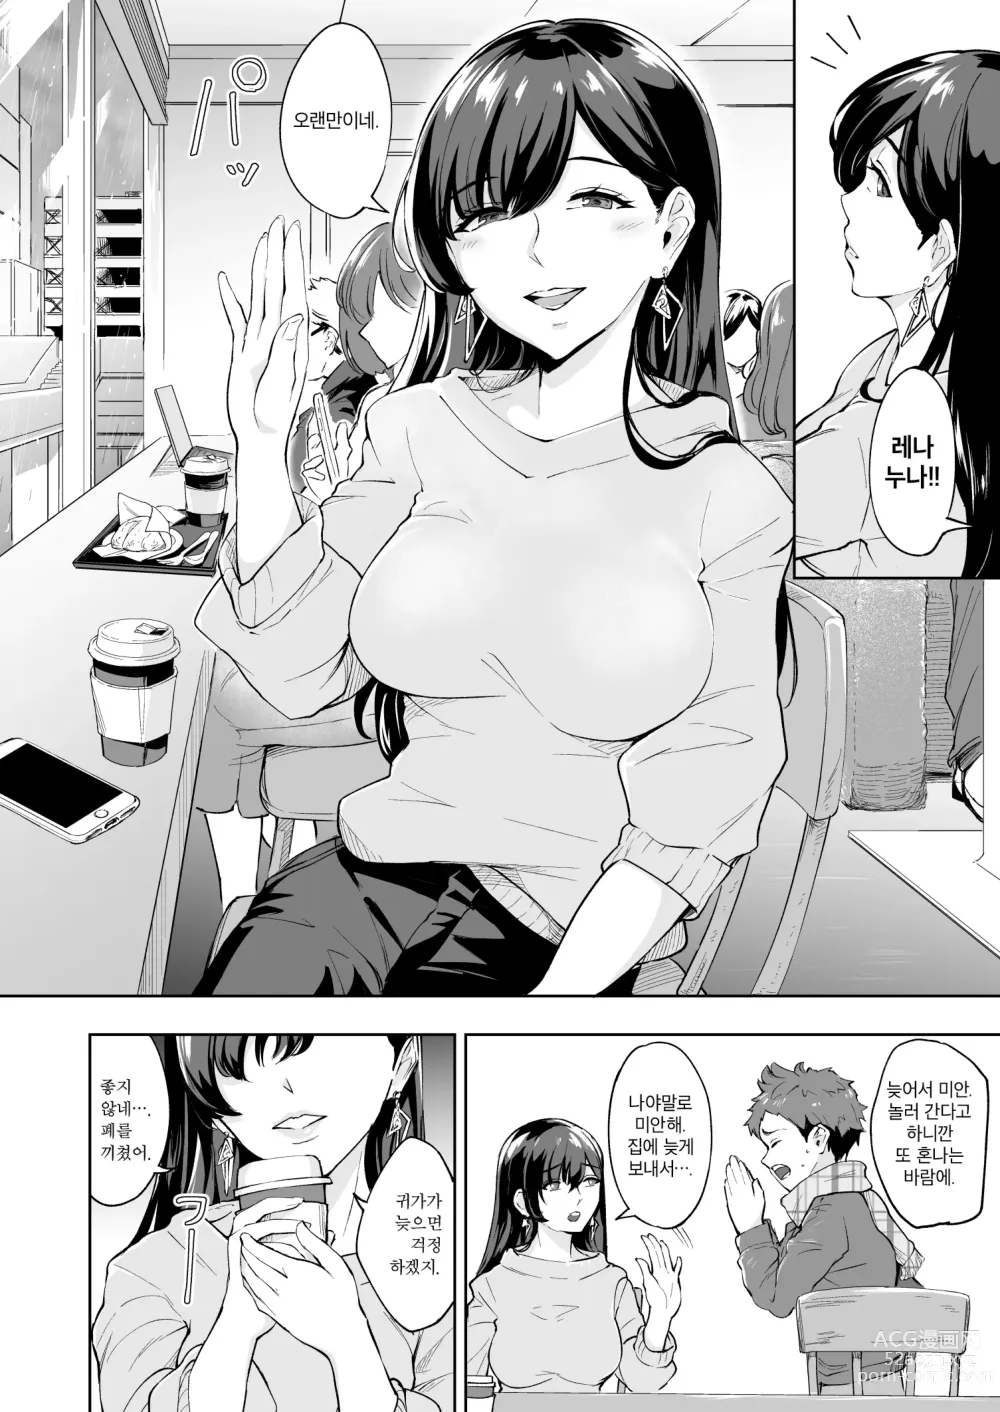 Page 3 of doujinshi 나타난 치녀는 연하킬러인 스카토로 변태였습니다 3